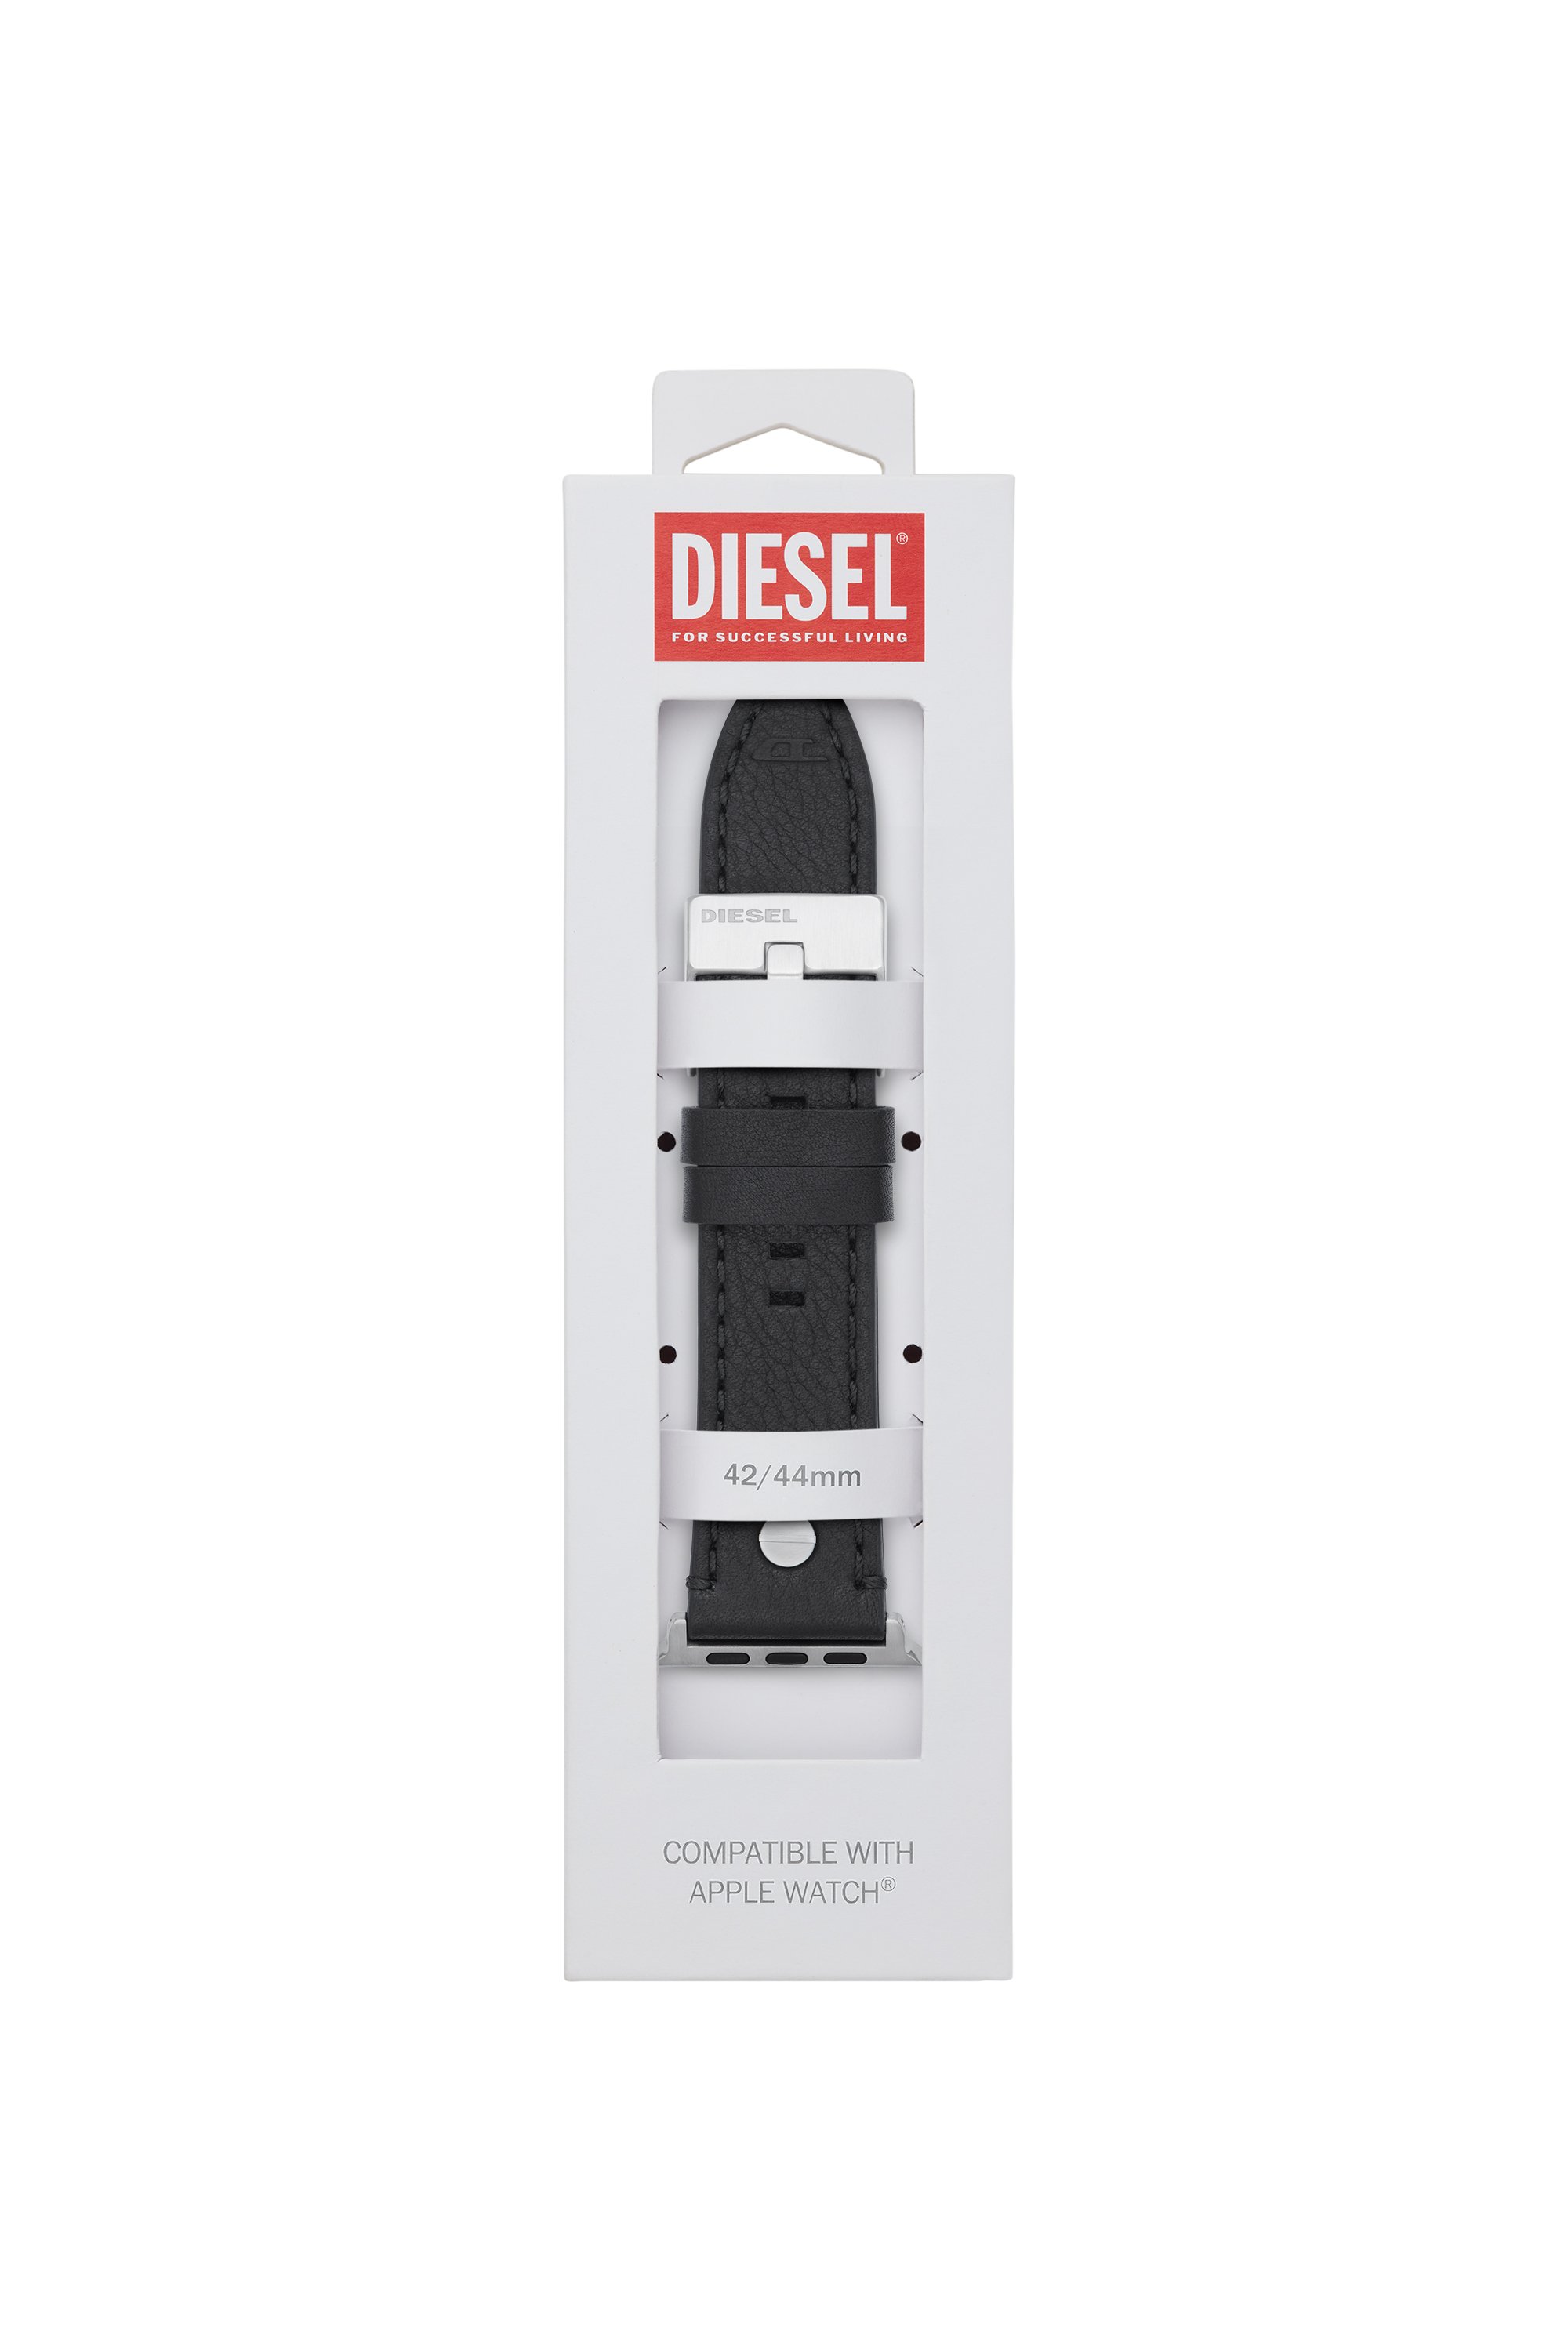 Diesel - DSS001, Noir - Image 2